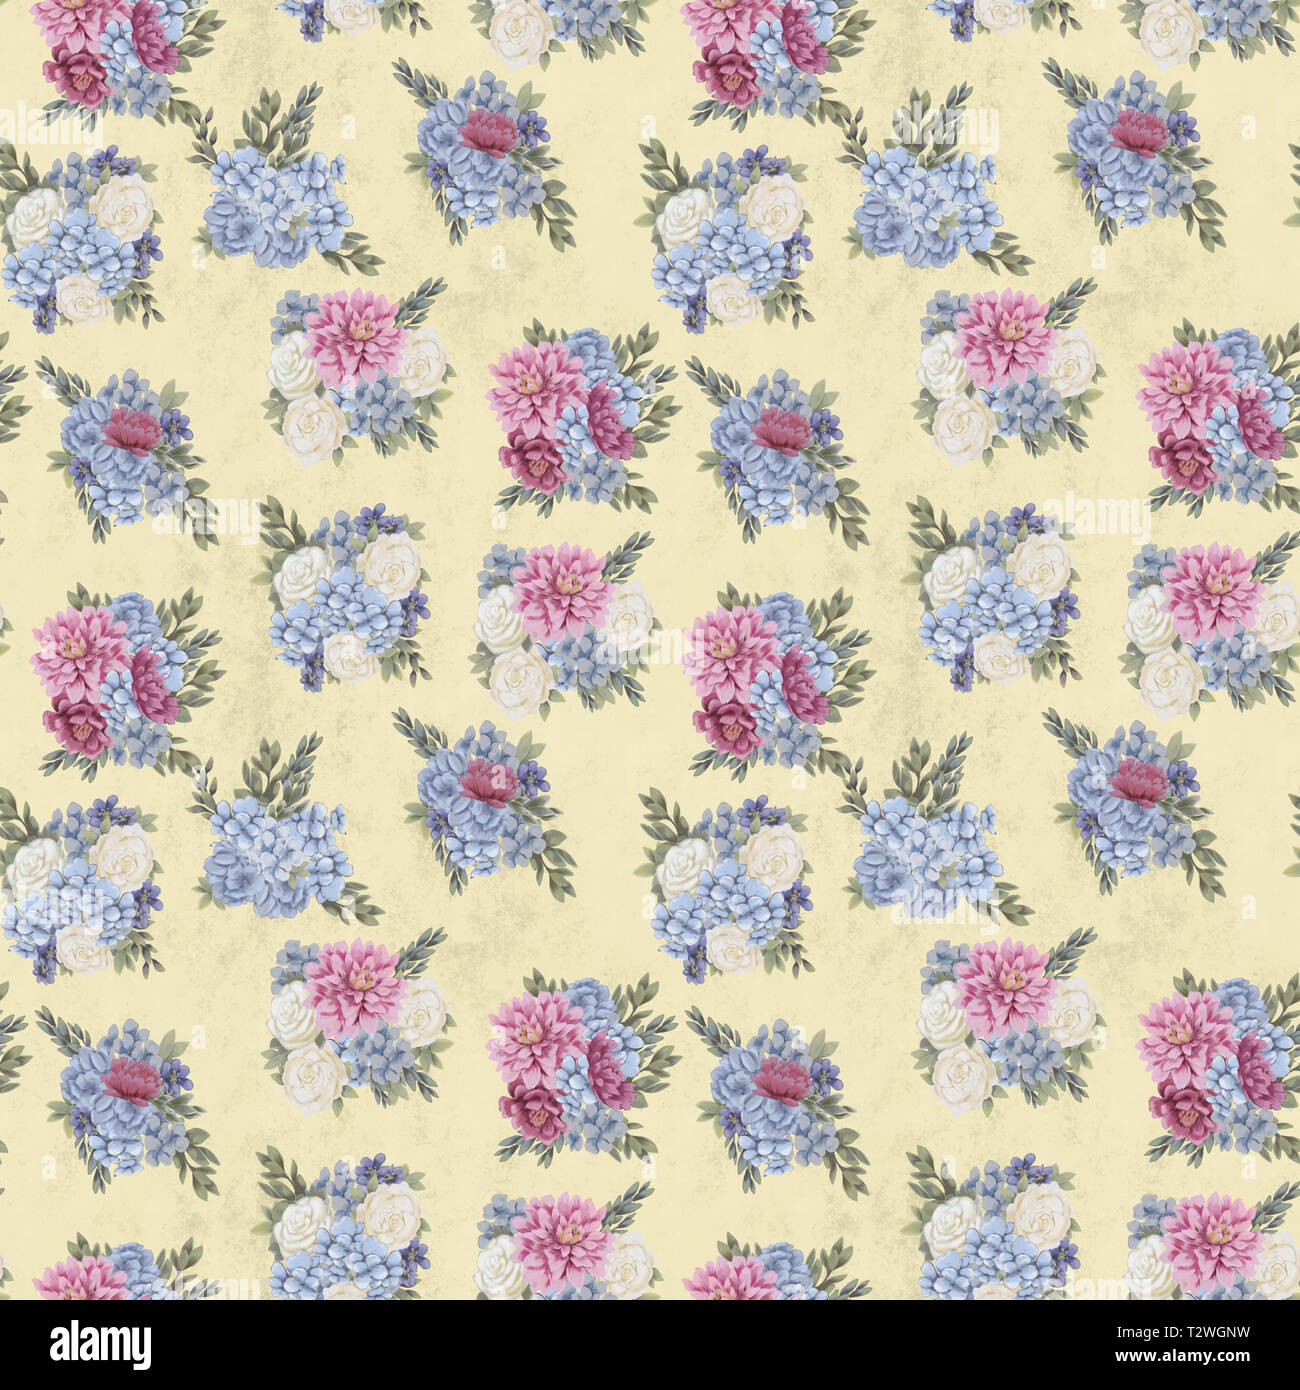 Vintage Floral pattern transparente. La main rose, bleu et blanc des fleurs et des feuilles pour le tissu. Couleurs délicates Banque D'Images